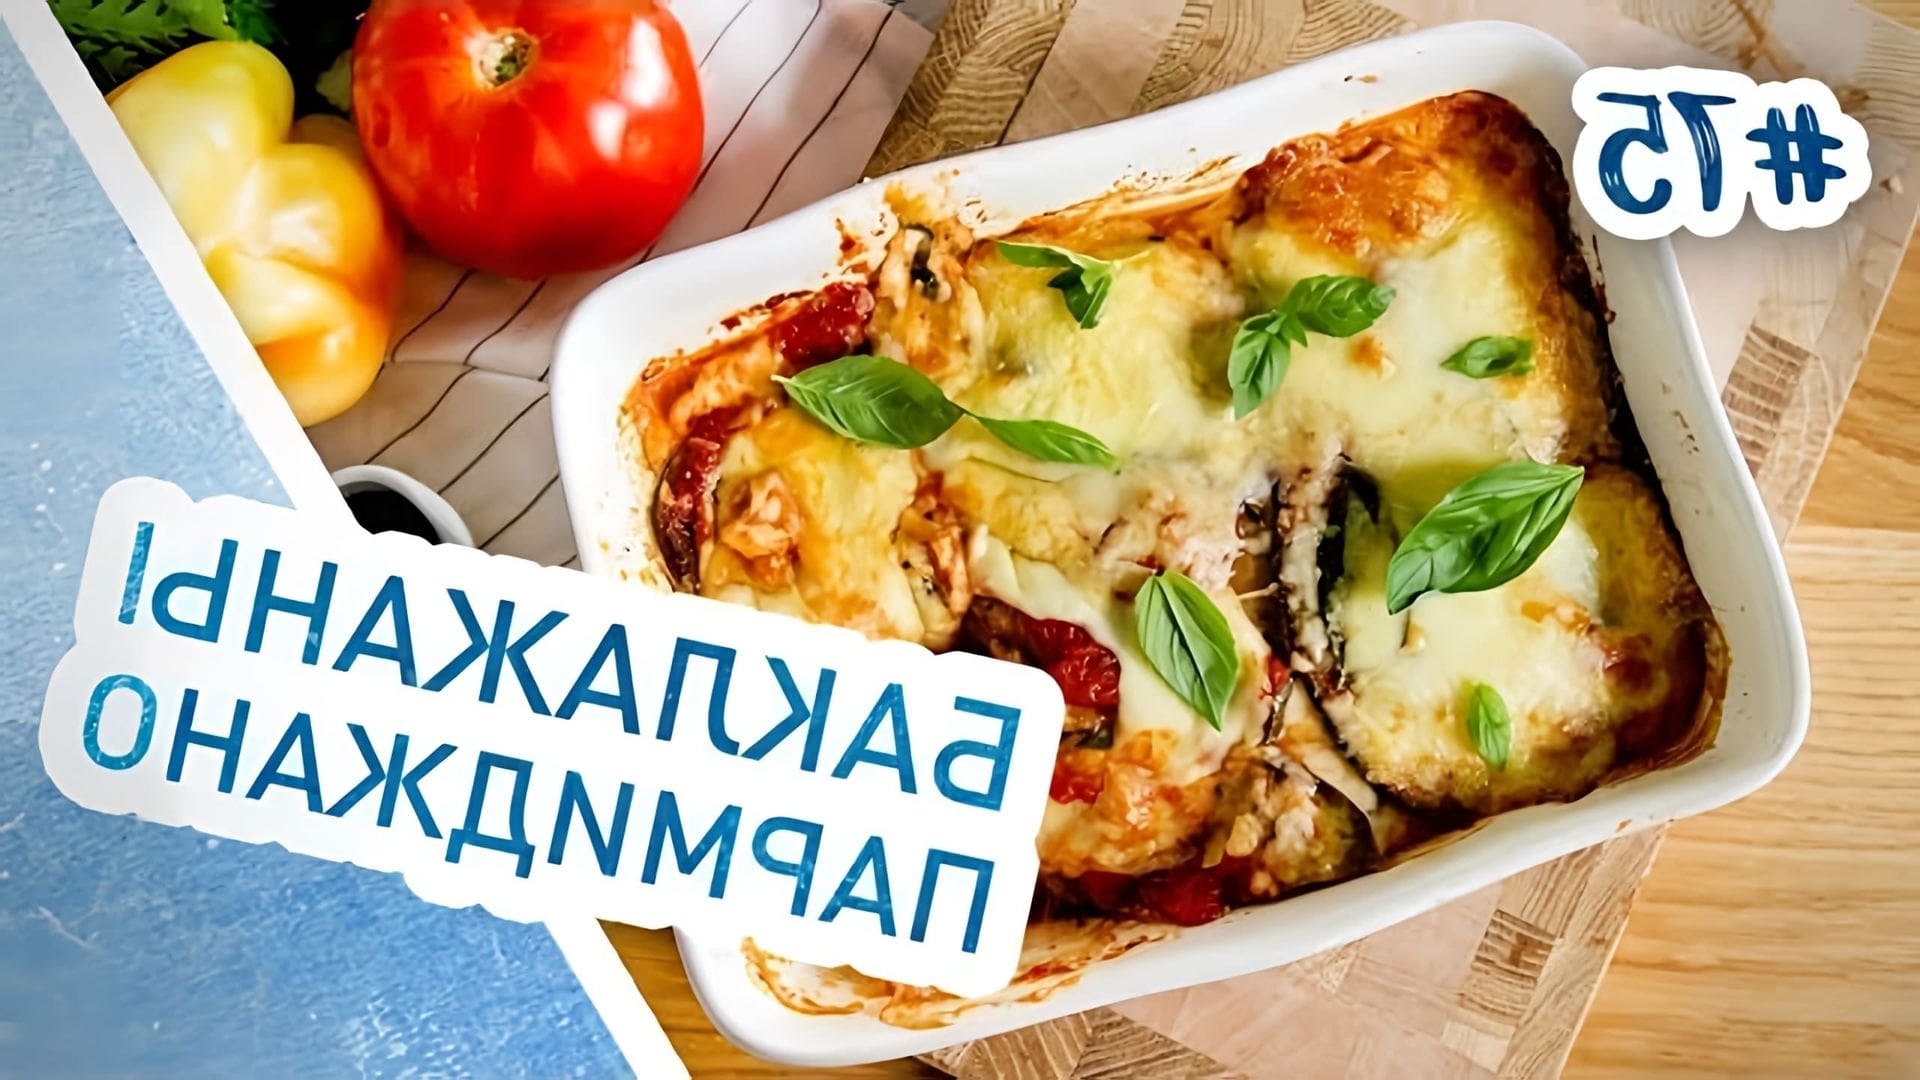 В этом видео демонстрируется процесс приготовления баклажанов пармиджано - итальянского блюда, которое можно подавать как закуску или основное блюдо